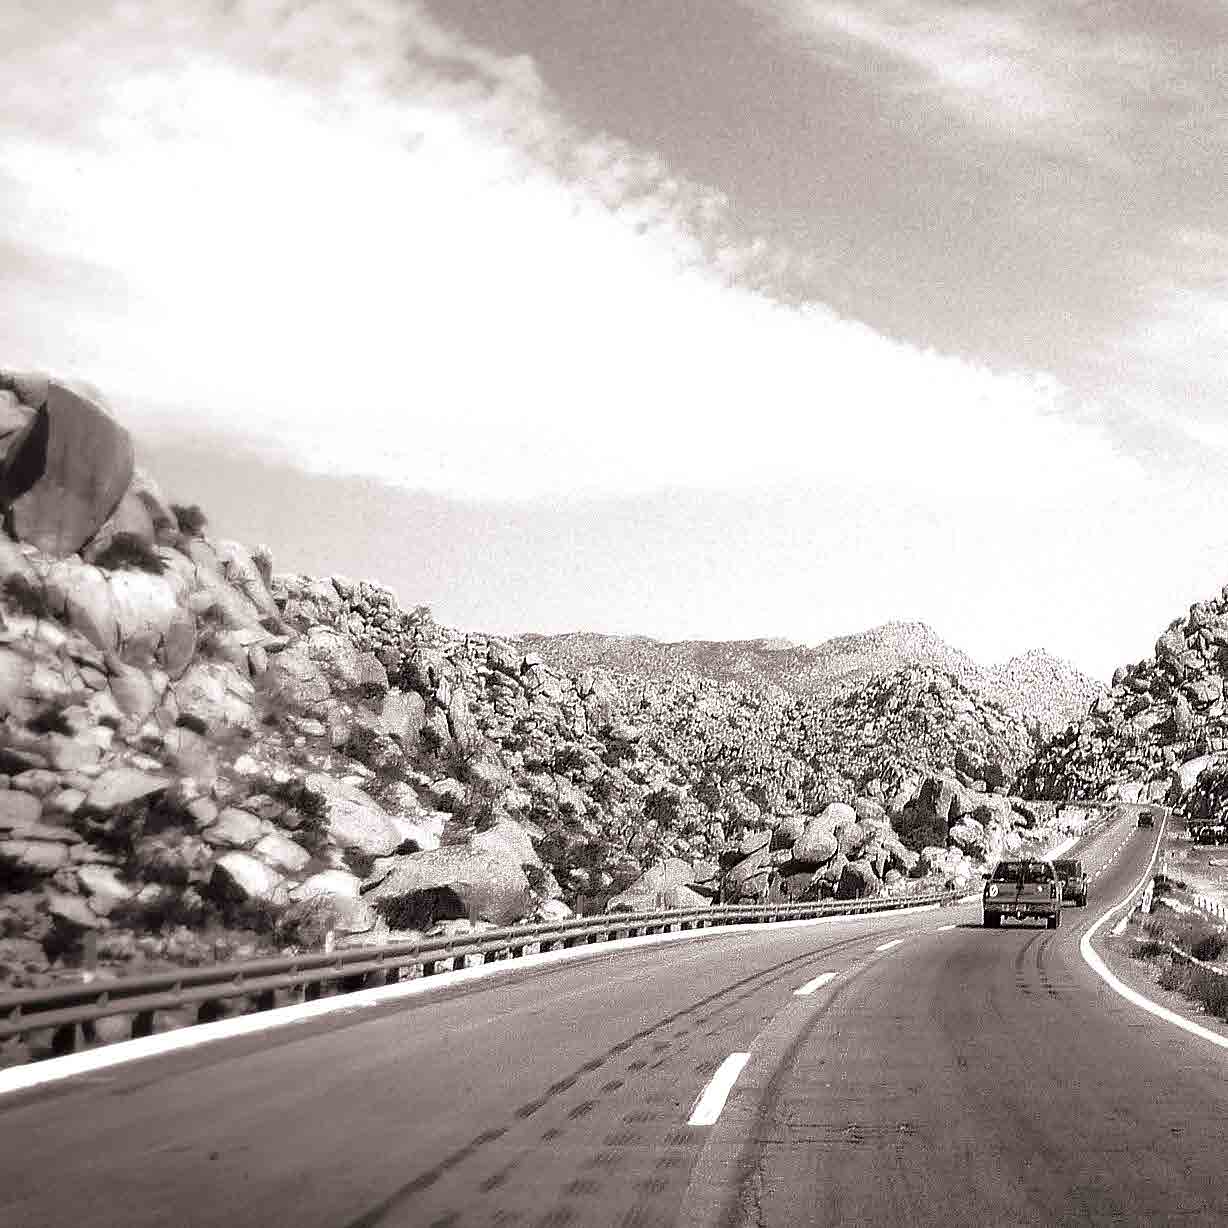 La autopista de La Rumorosa entreteje uno de los caminos más peligrosos transitados por los migrantes antes de llegar al desierto, a pocos kilómetros de Estados Unidos.